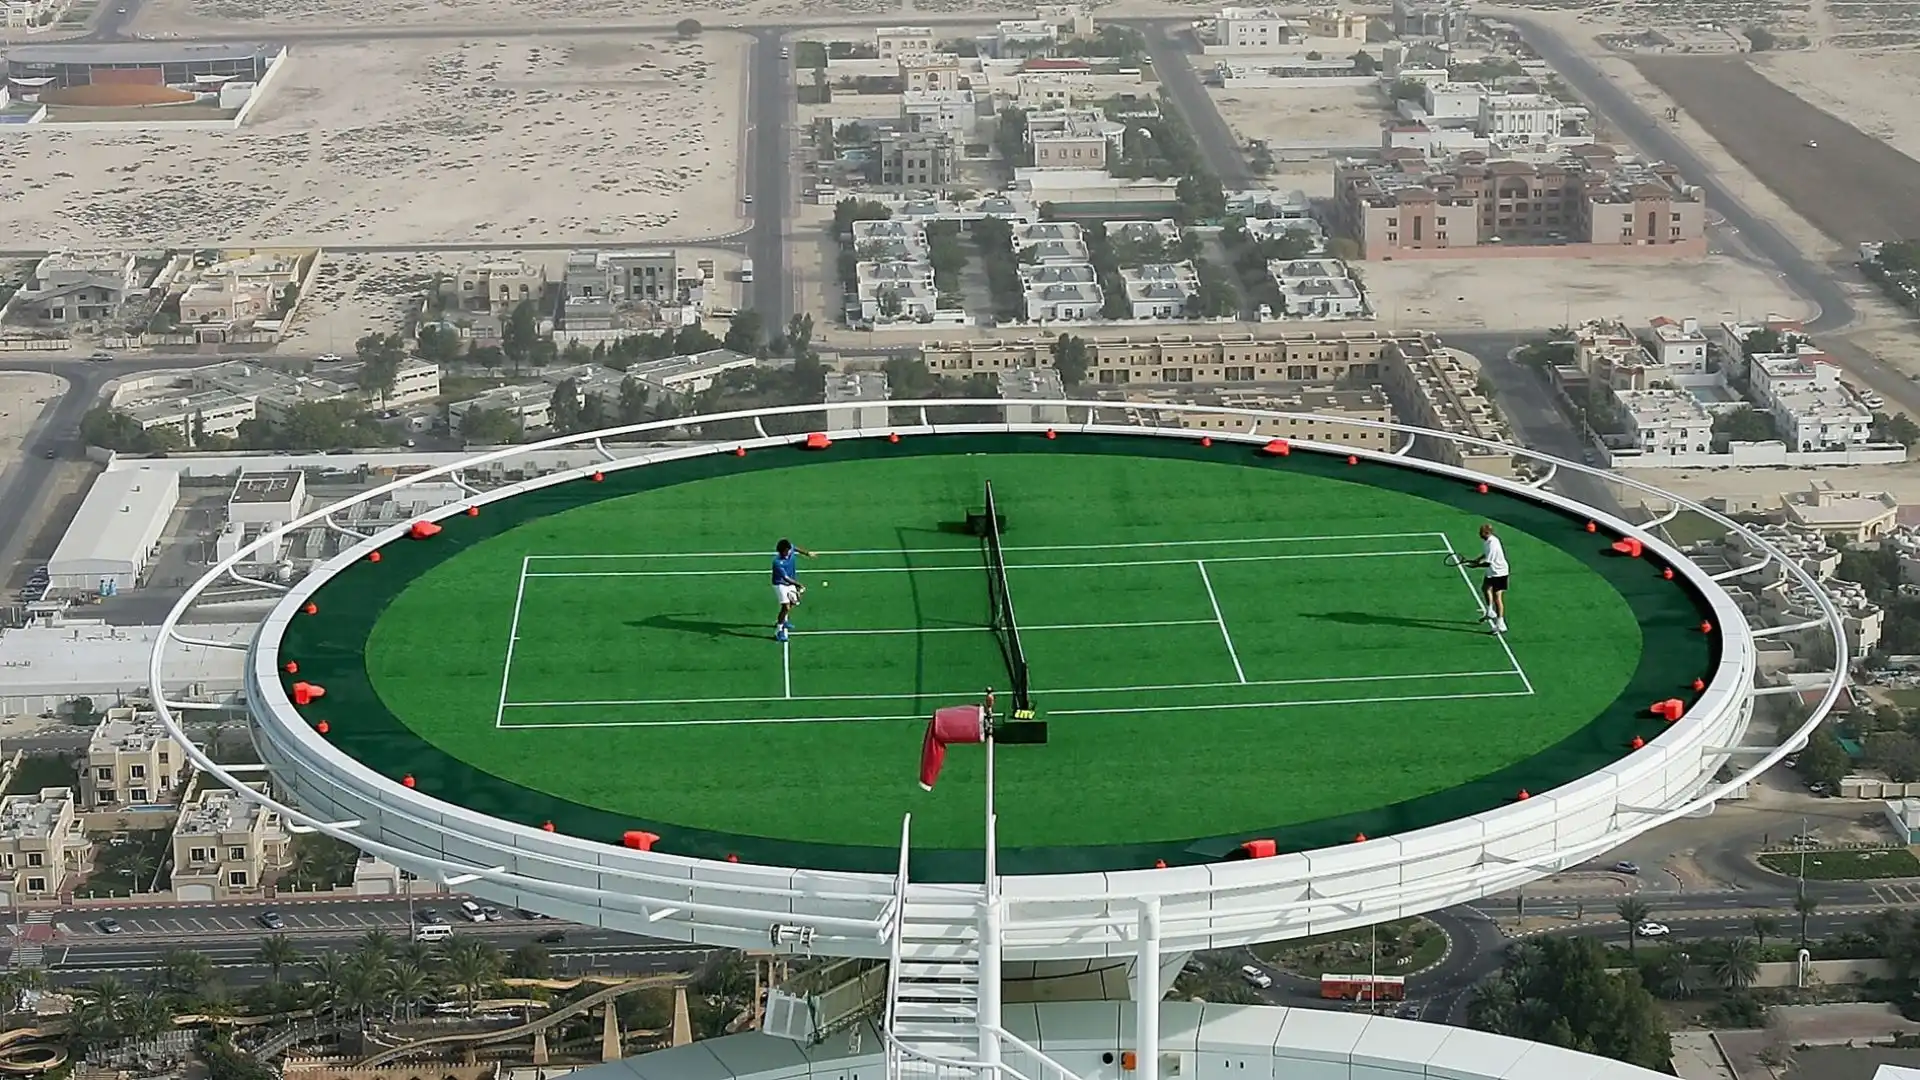 La partita è entrata nel Guinness dei primati: il campo da tennis è considerato il più alto mai installato